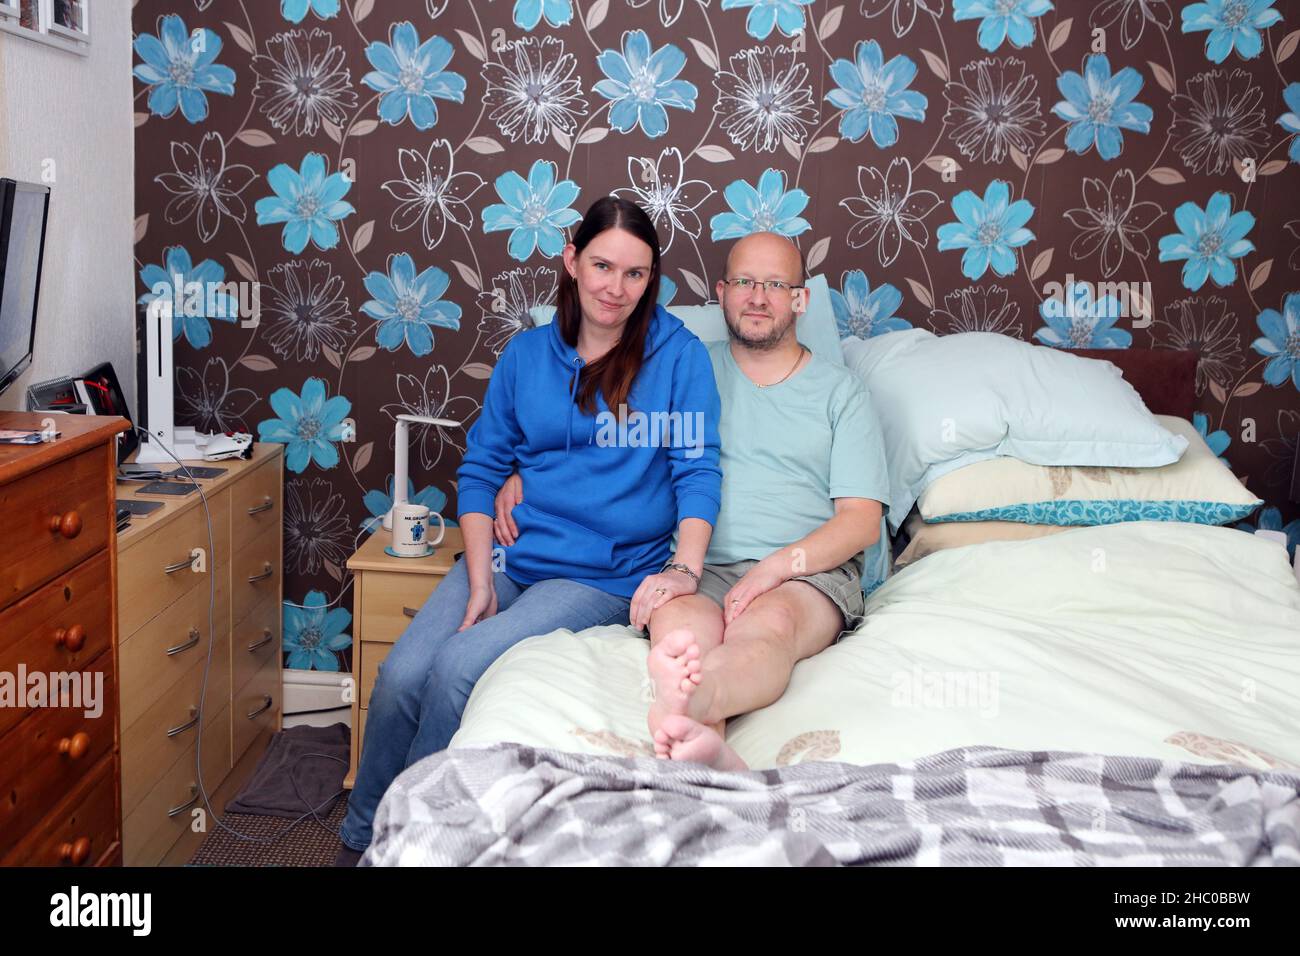 Sarah und Matthew Lomax in Nelson, Lancashire. (Matthew leidet an einem dibalen Zustand), denen James Anderson, ein Klempner, der läuft, geholfen hat Stockfoto